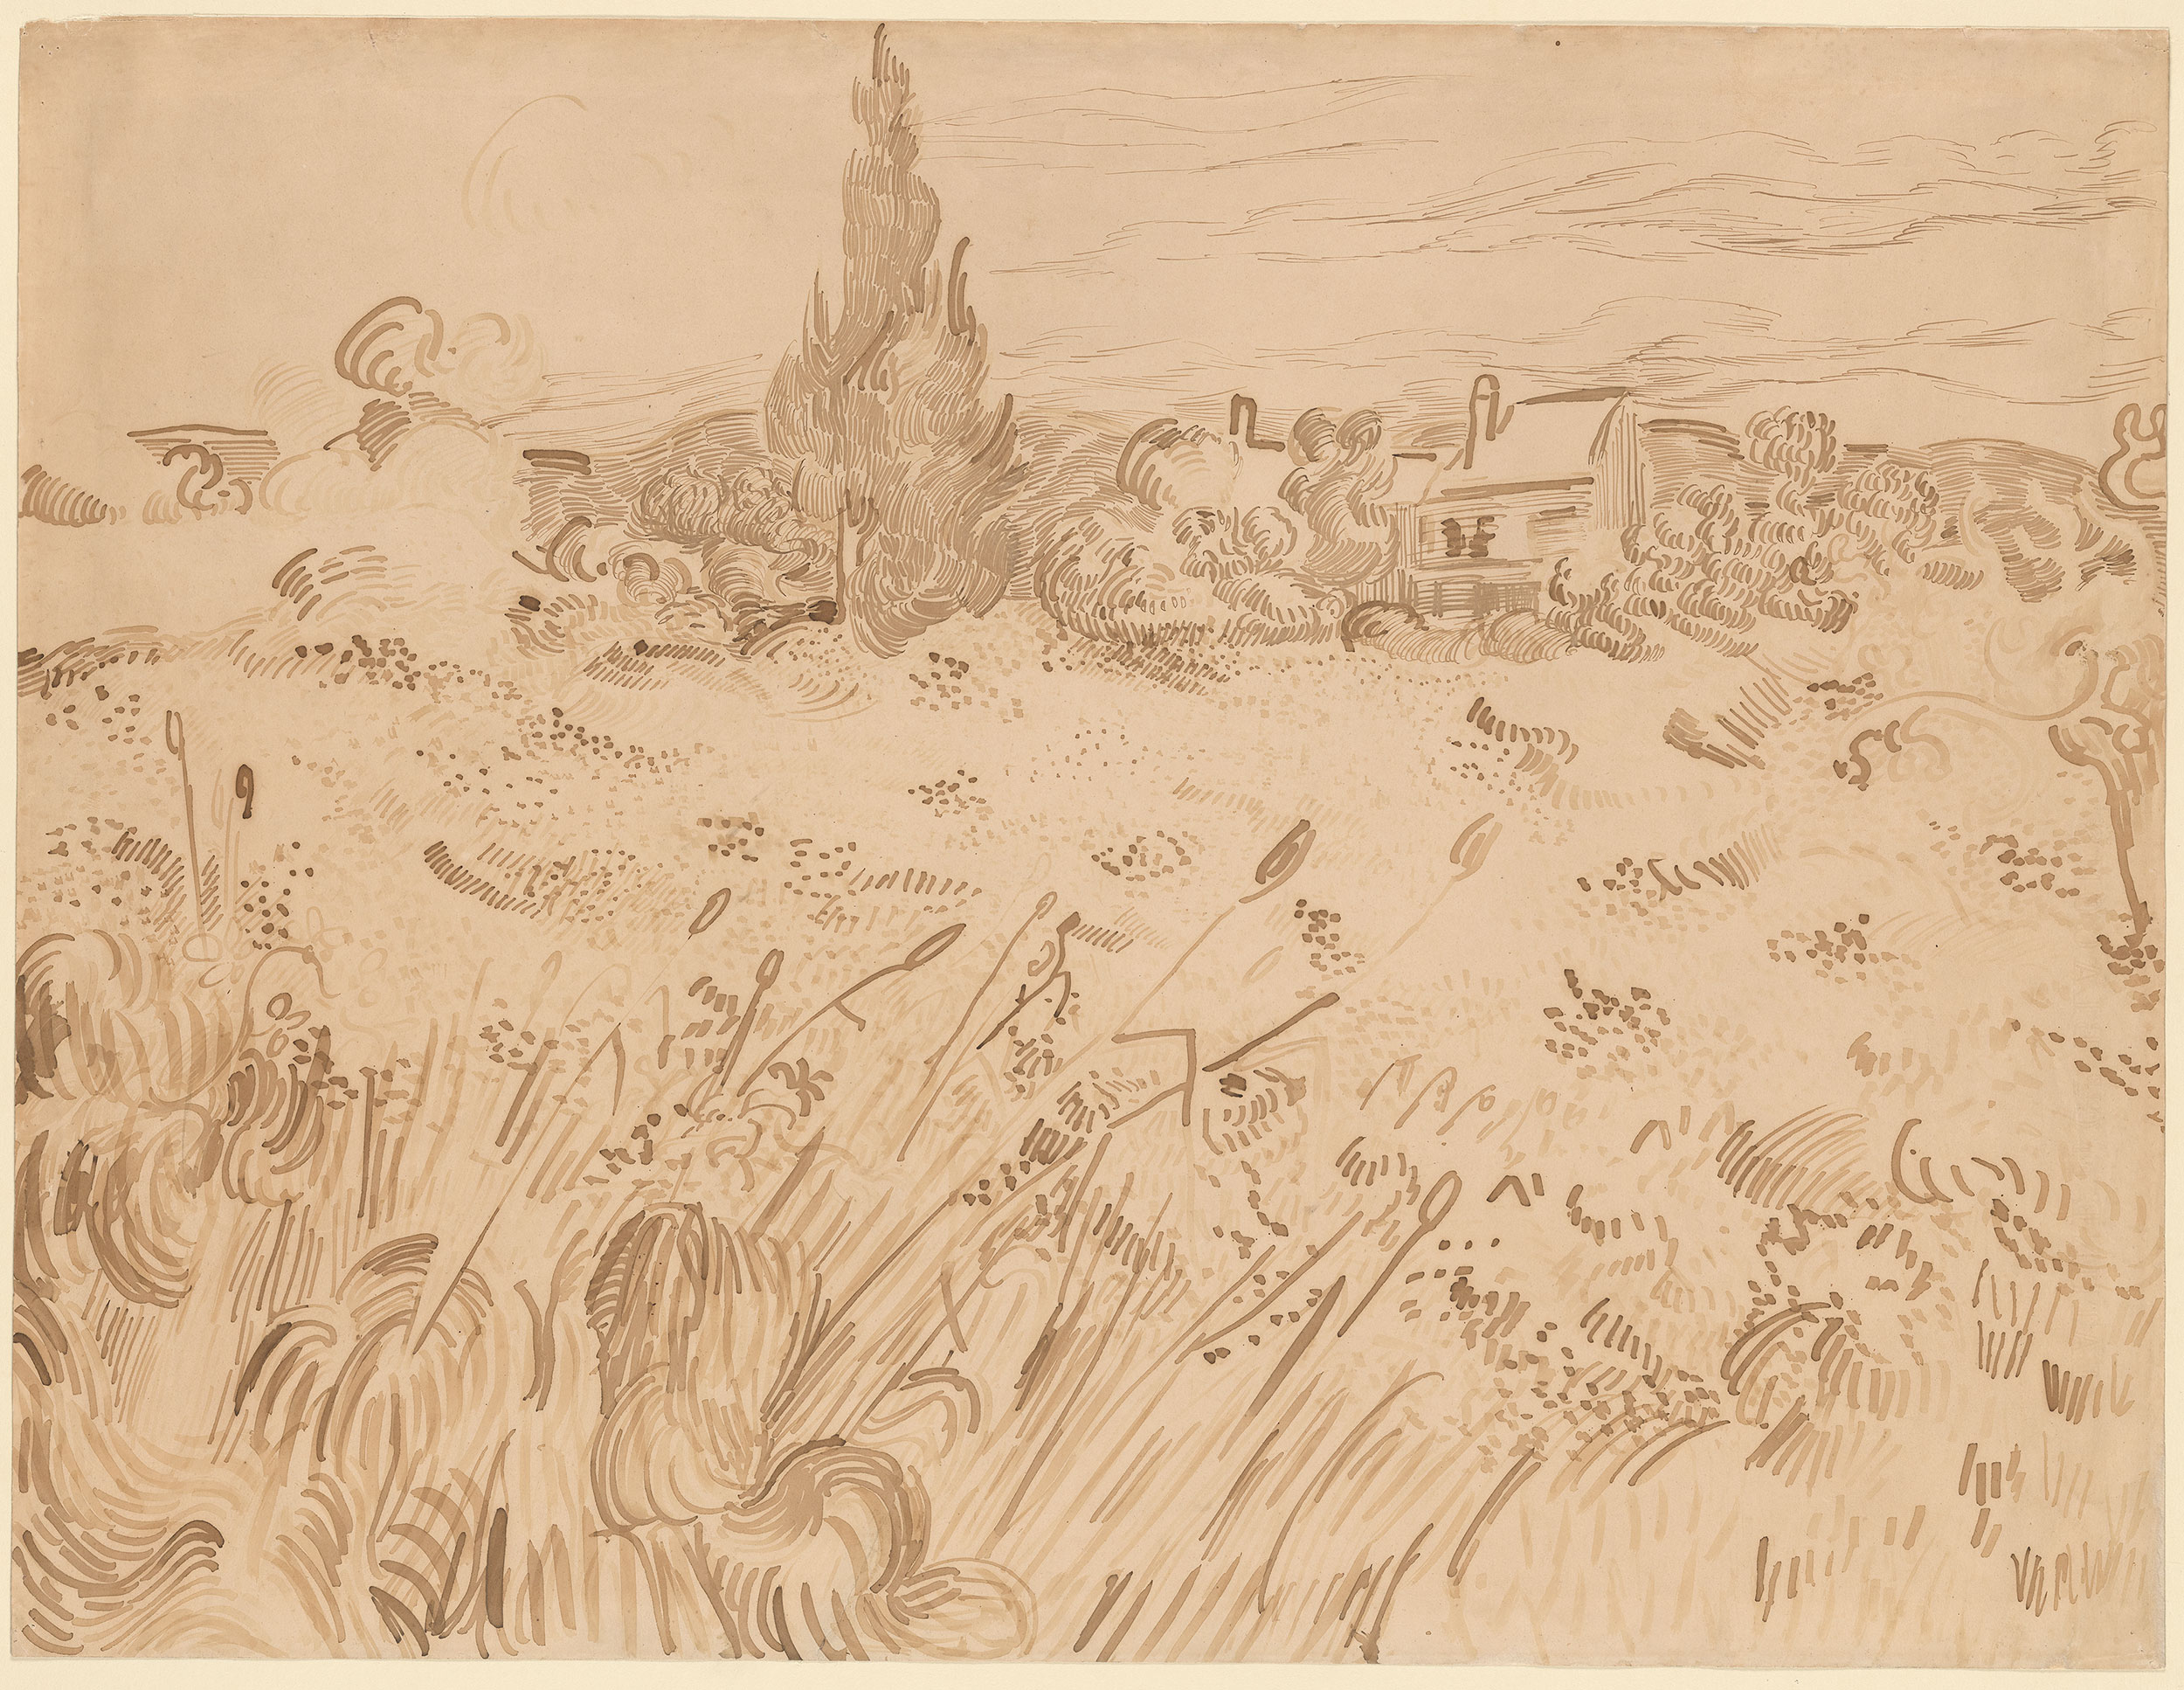 Vincent van Gogh, "Campo de trigo, Saint-Rémy de Provence", 1889. Tinta sobre papel, 466 x 615 mm. The Morgan Library & Museum, Nova York. Imagem em domínio público. 